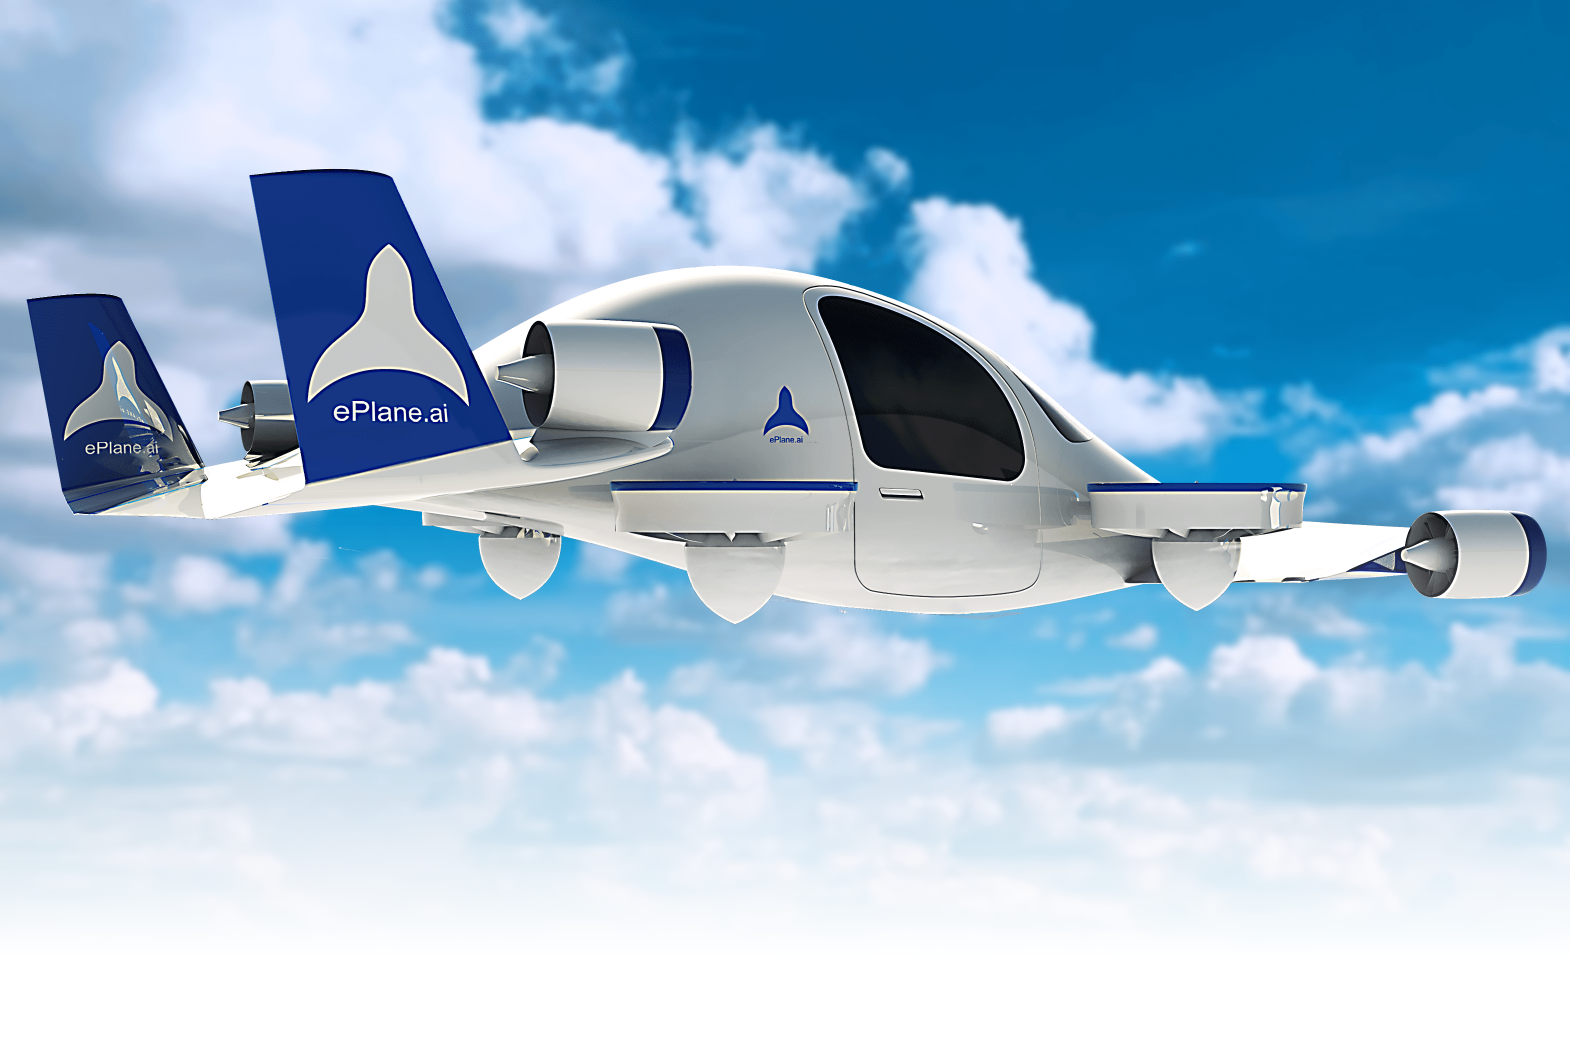 Основатель ePlane заявил, что компания планирует выпустить первый прототип воздушного такси до конца 2024-го года, а уже в 2027-м году запустить полномасштабную коммерциализацию в Индии